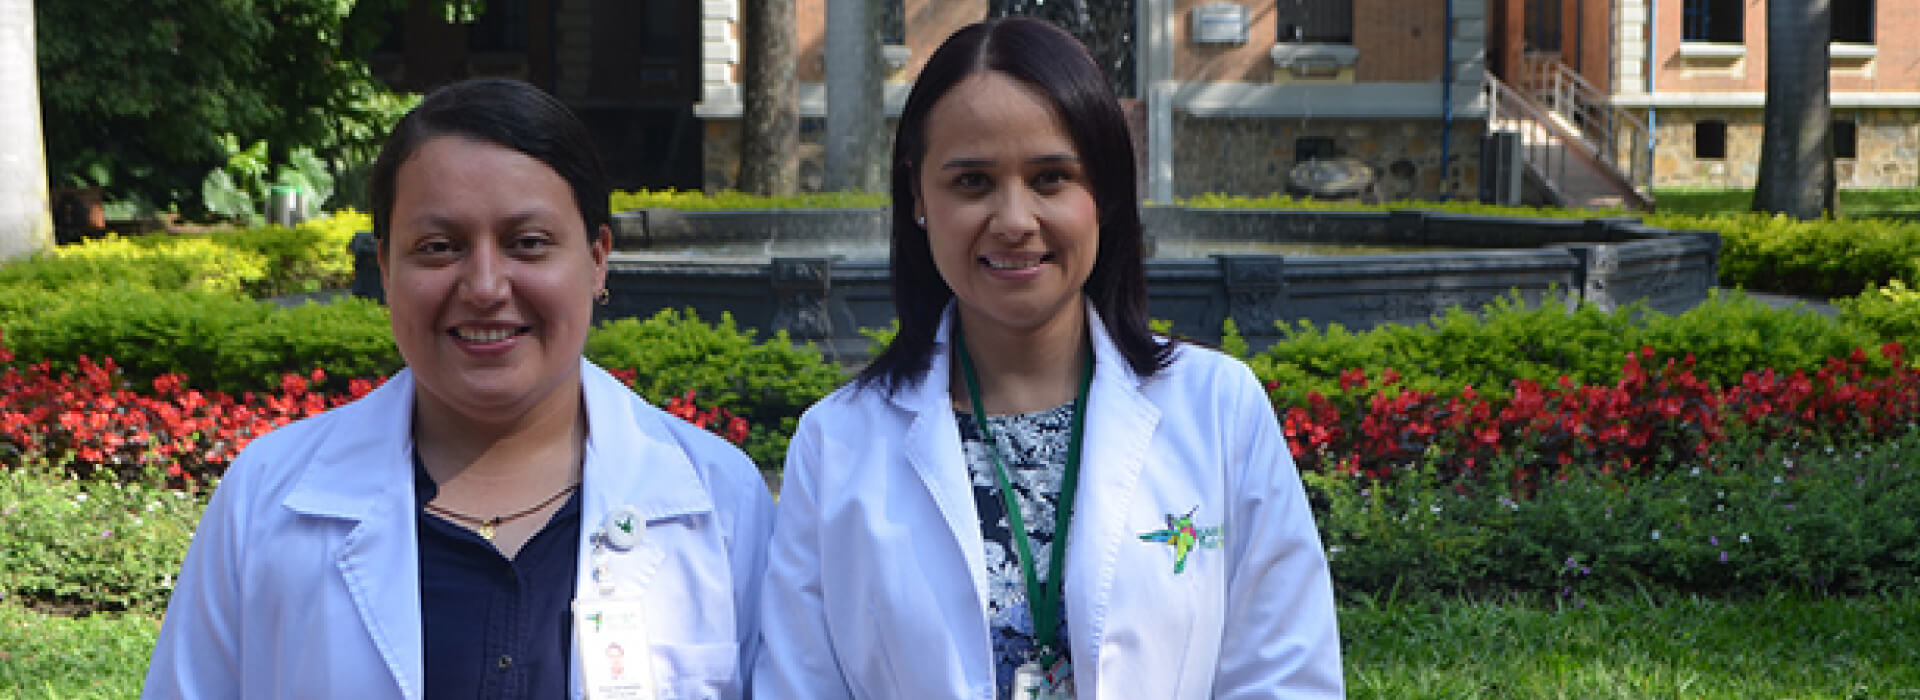 Dos doctoras con bata blanca en una zona verde